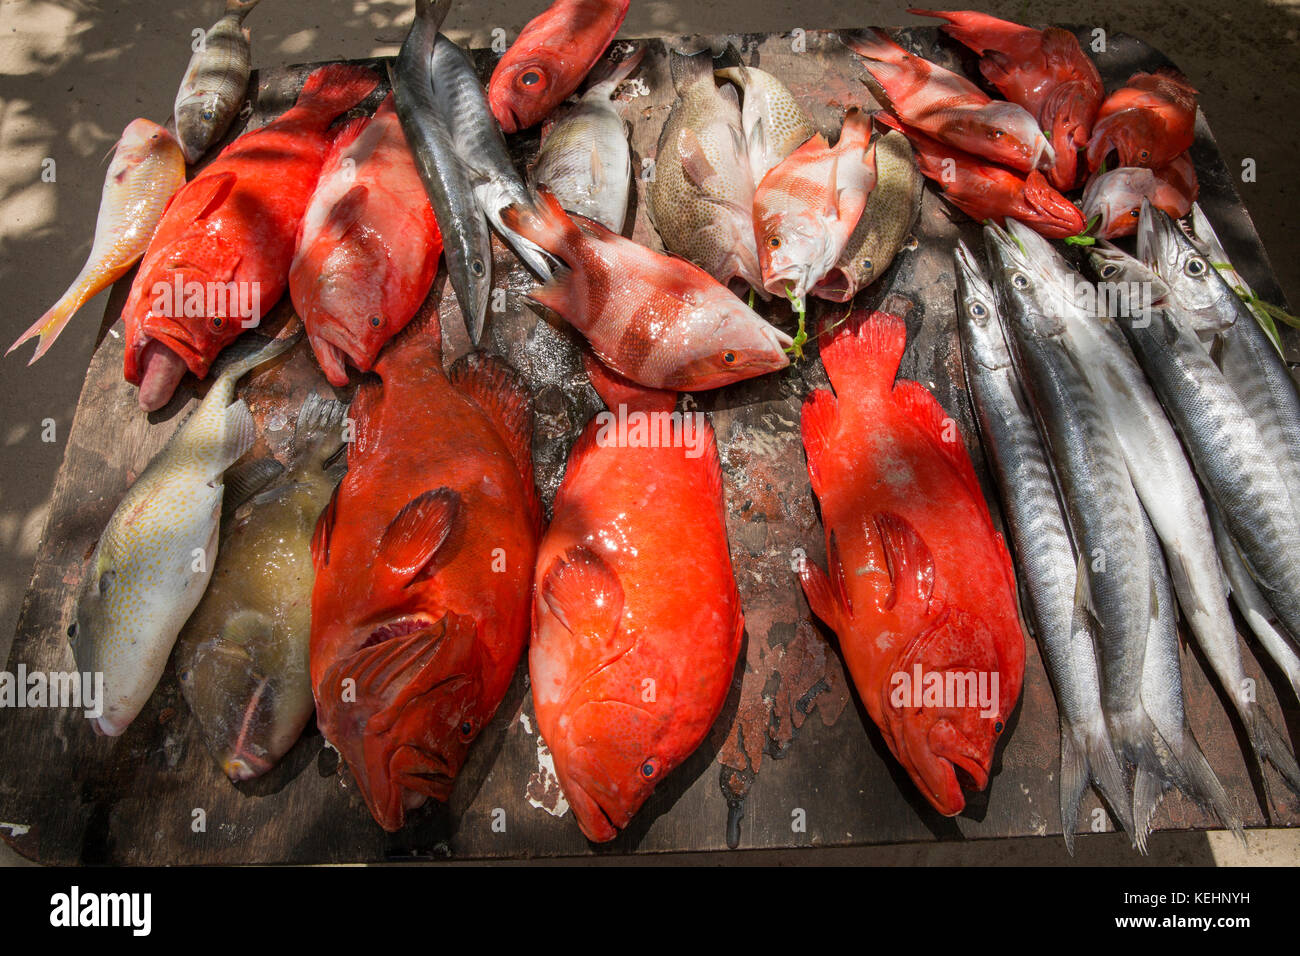 Les Seychelles, Mahe, Sir Selwyn Selwyn-Clarke Market, de poissons, de décrochage et de poissons de récif Barracuda chevron à vendre Banque D'Images